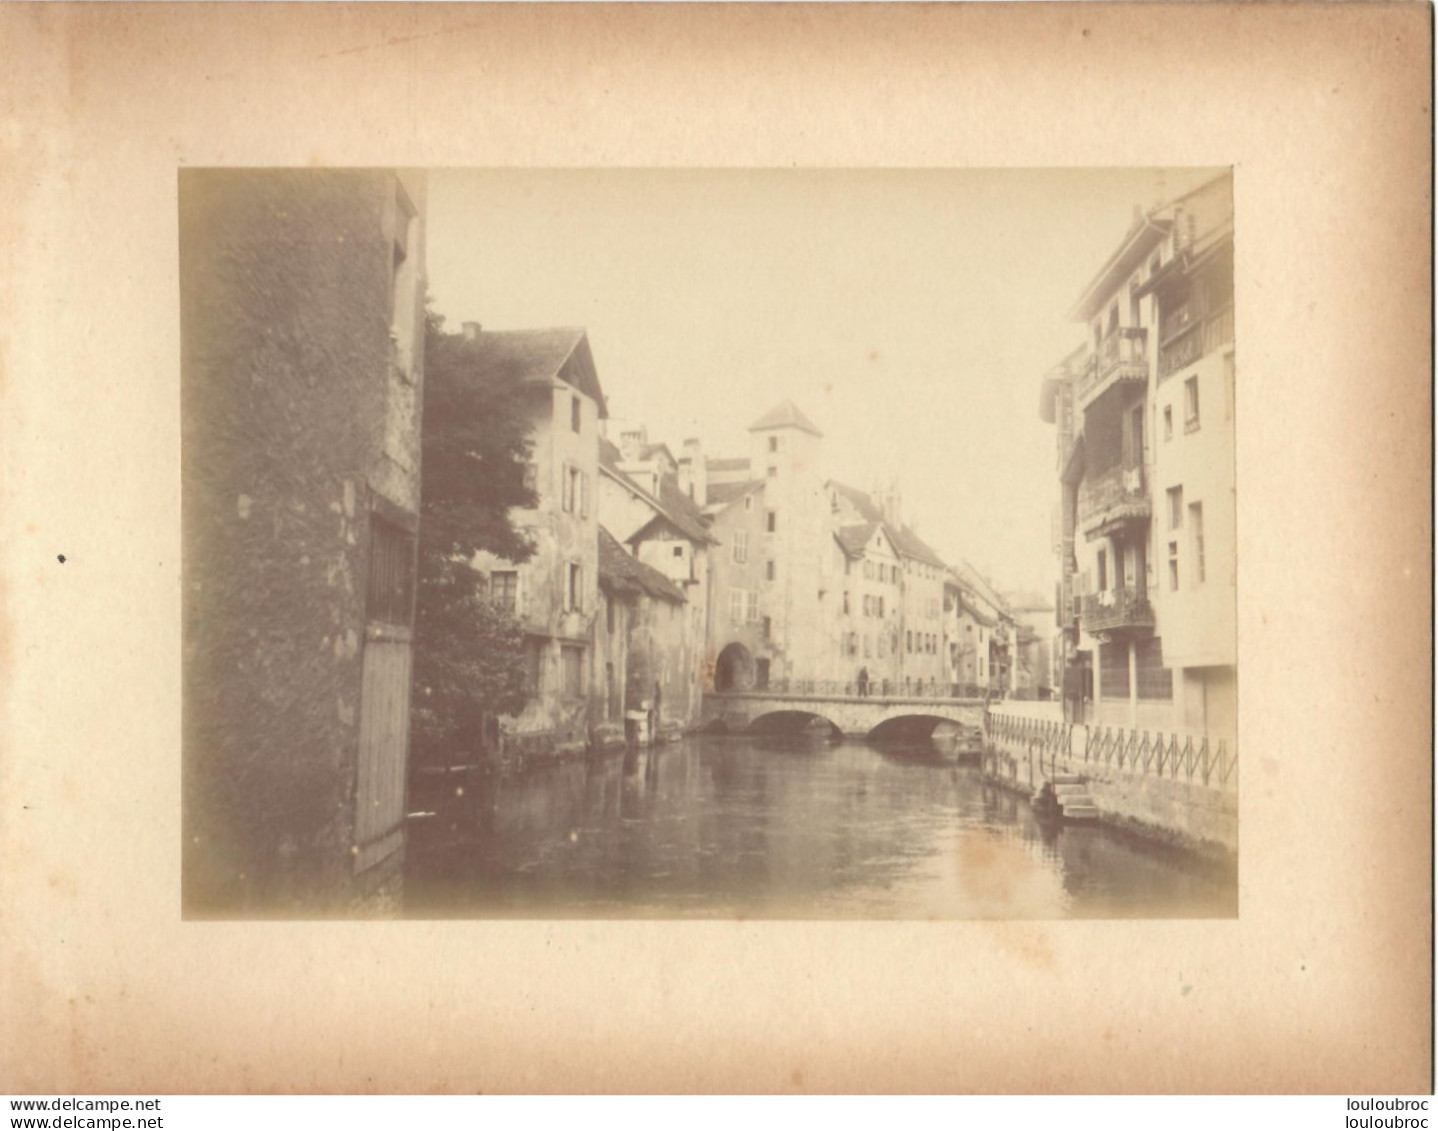 ANNECY CANAL DE THIOUX FIN 19em PHOTO ORIGINALE SUR CARTON 23x18CM FORMAT PHOTO 16X12CM - Antiche (ante 1900)